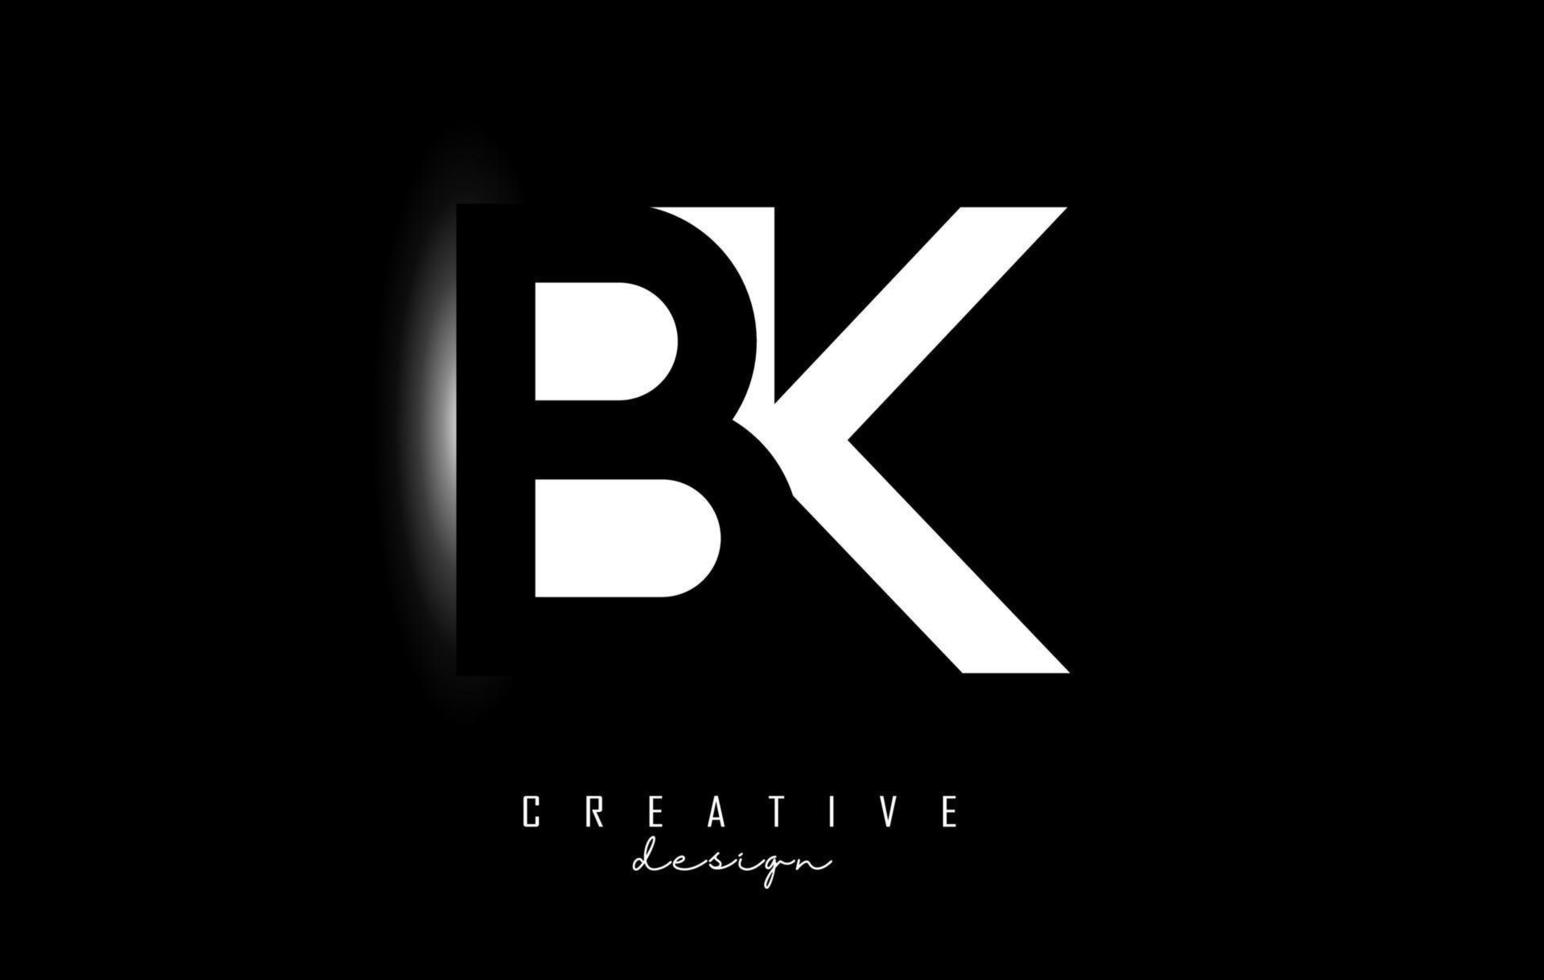 Buchstaben bk Logo mit Space Design auf schwarzem Hintergrund. buchstaben b und k mit geometrischer typografie. vektor